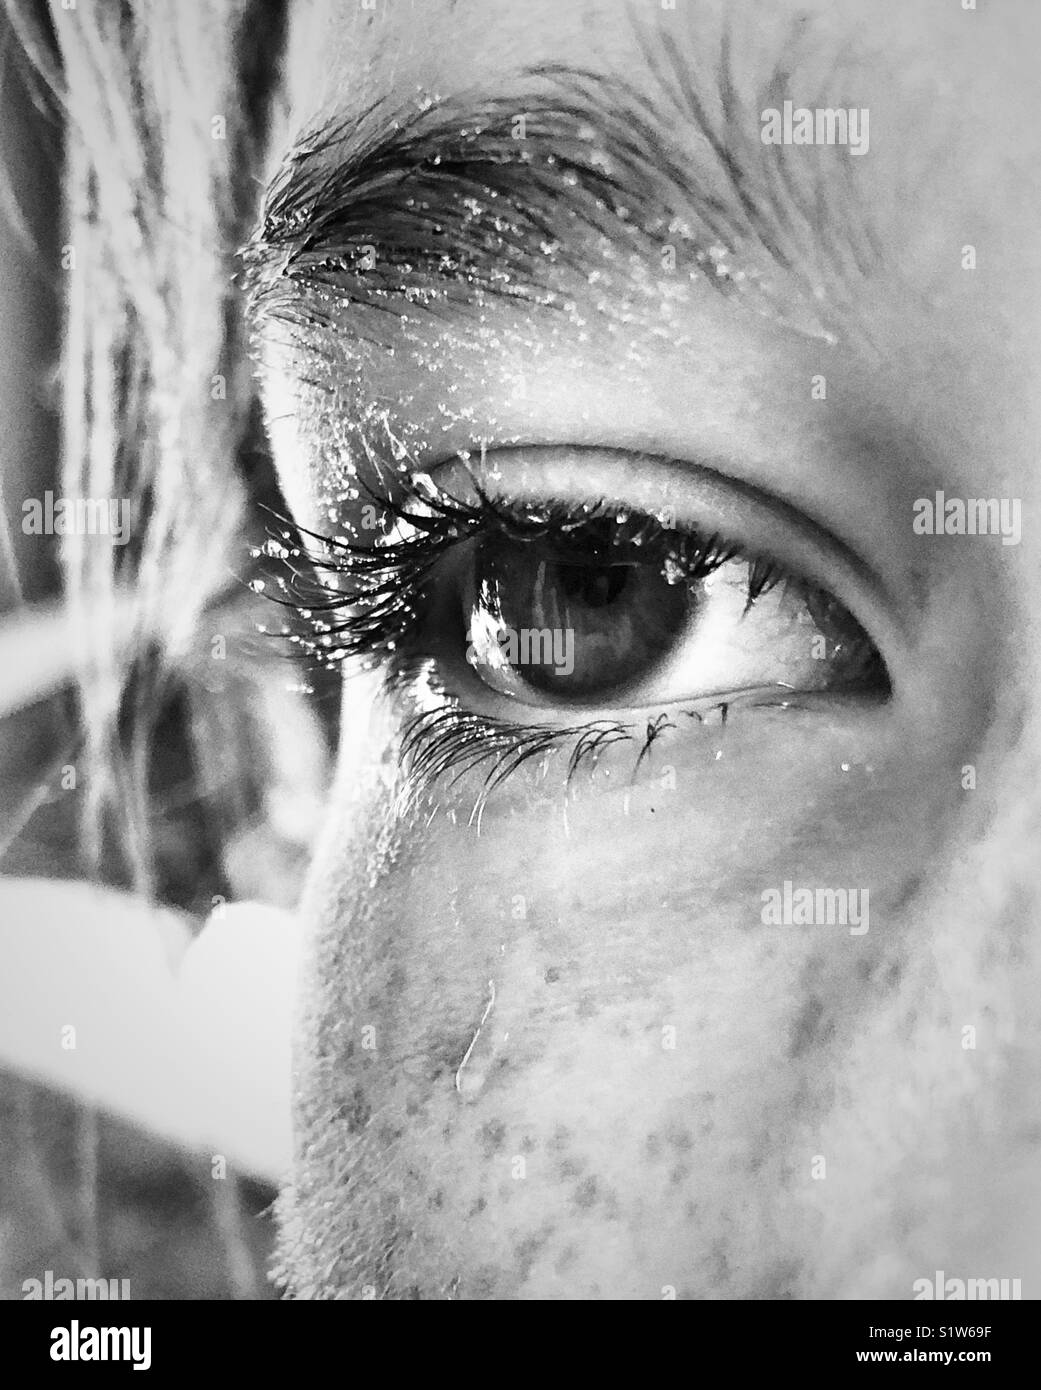 Primer plano de una chica del ojo y rostro cubierto parcial en las gotas de agua que lucen como el sudor o las lágrimas Foto de stock